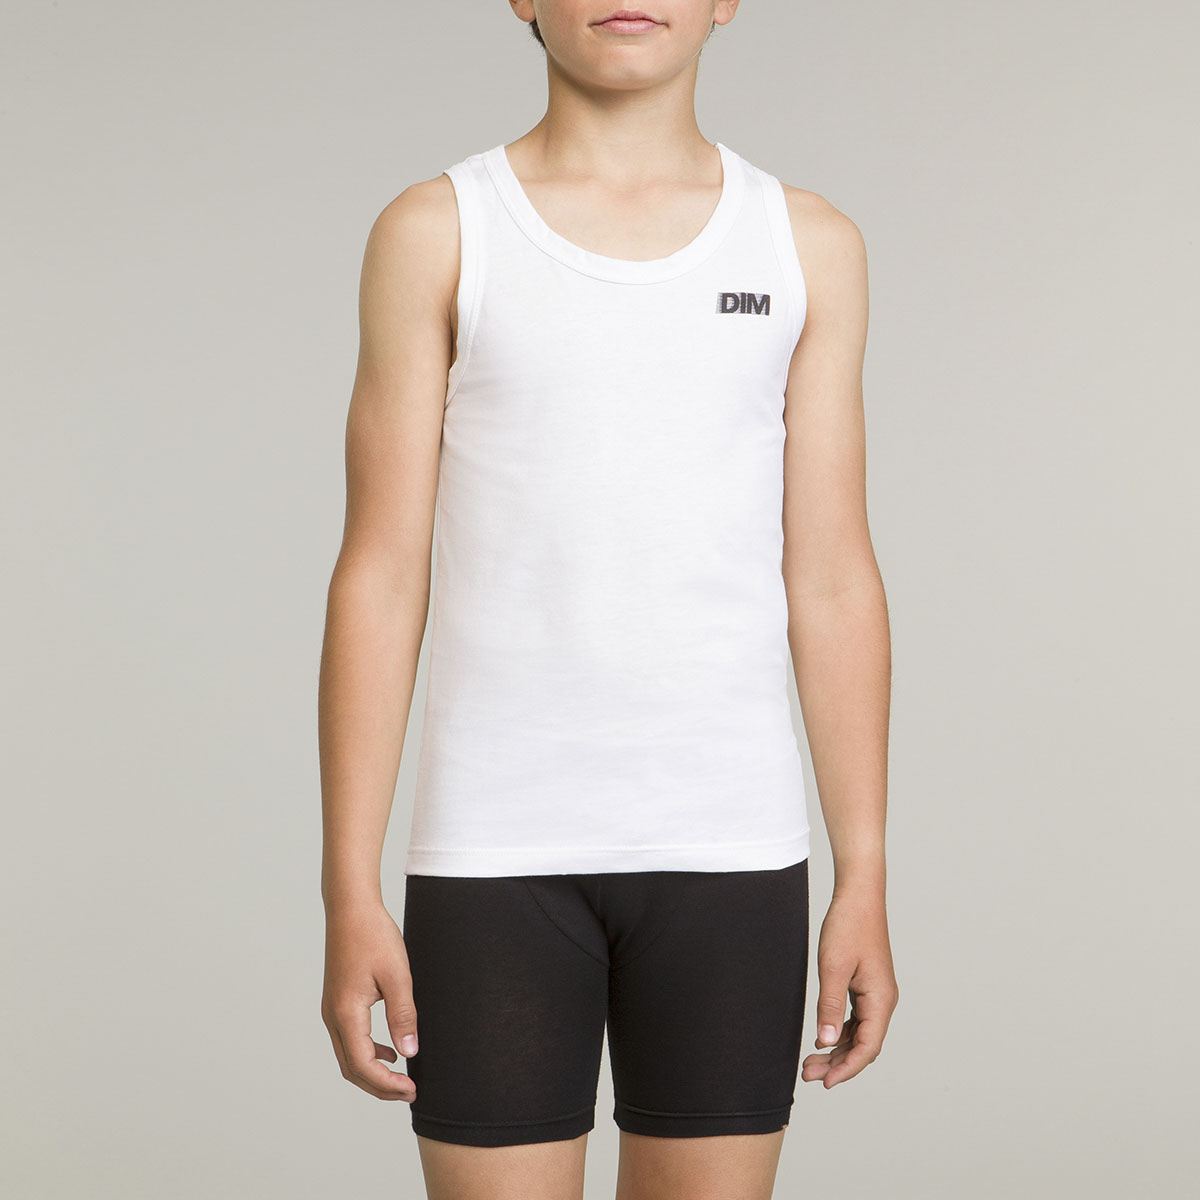 White boy's sport tank top 100% cotton Basic Sport